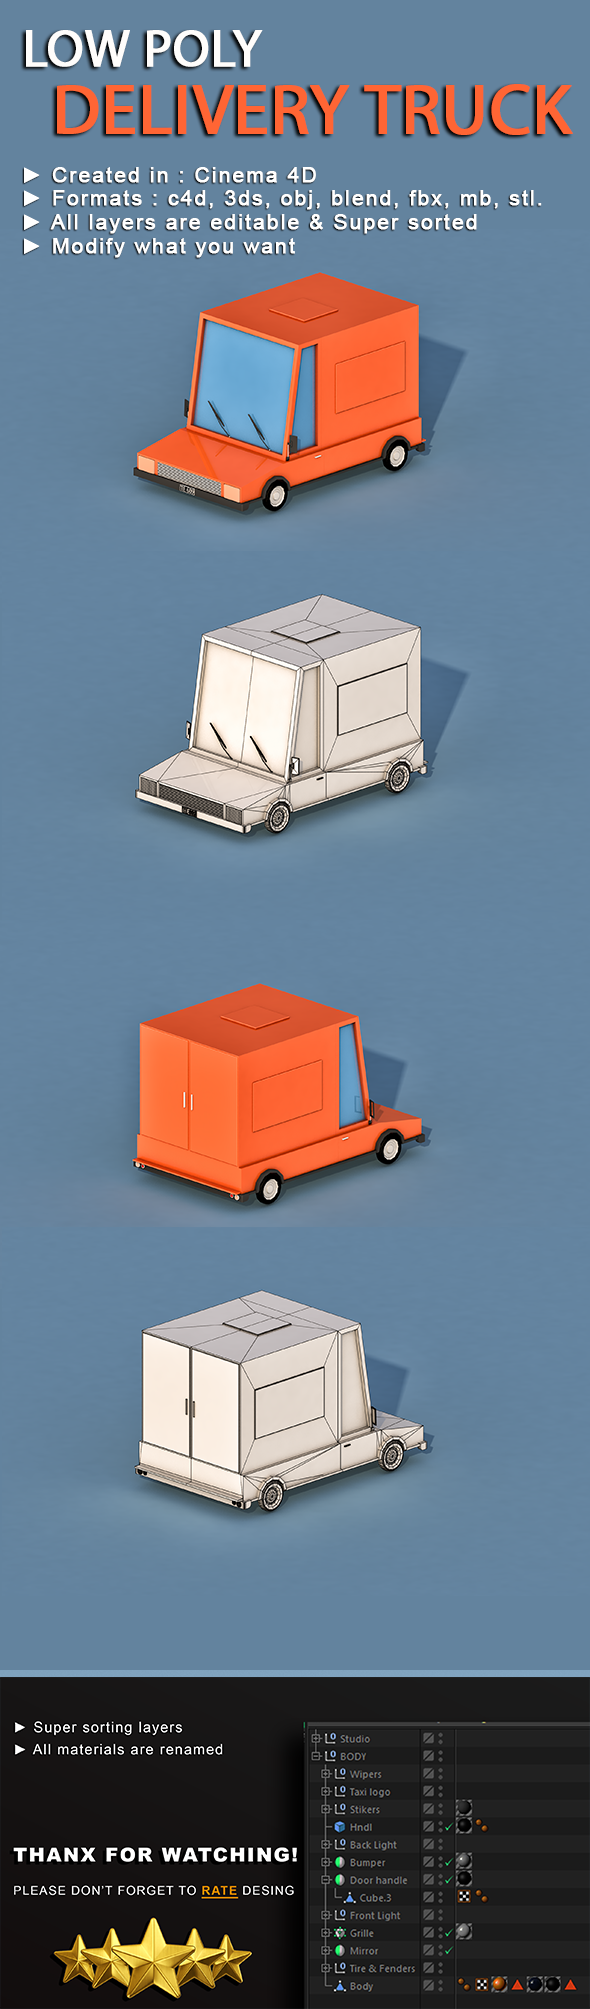 Cartoon Delivery Truck - 3Docean 22935930